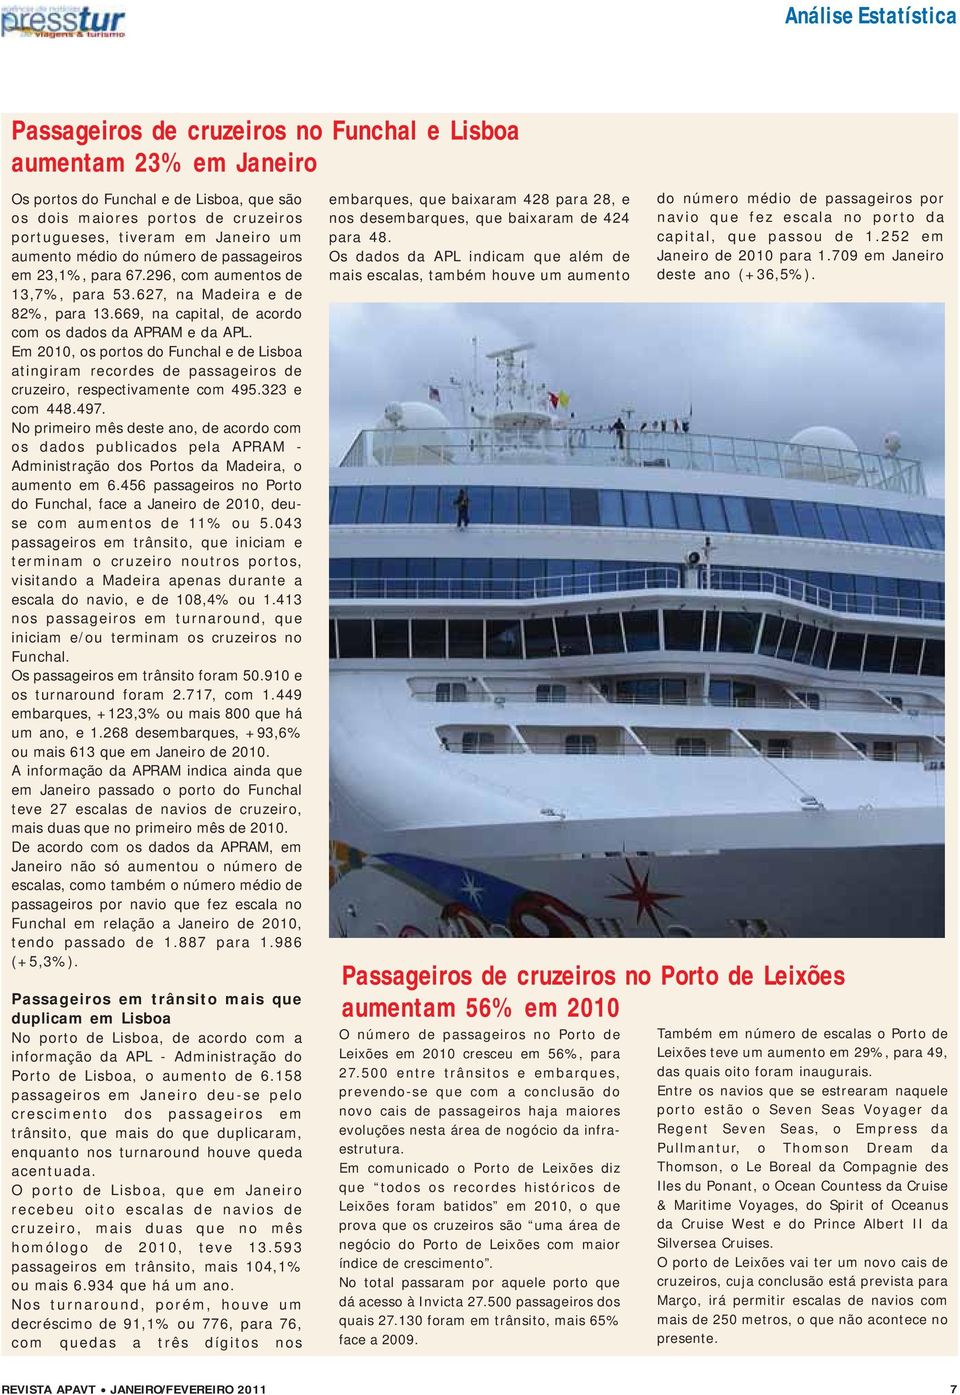 Em 2010, os portos do Funchal e de Lisboa atingiram recordes de passageiros de cruzeiro, respectivamente com 495.323 e com 448.497.